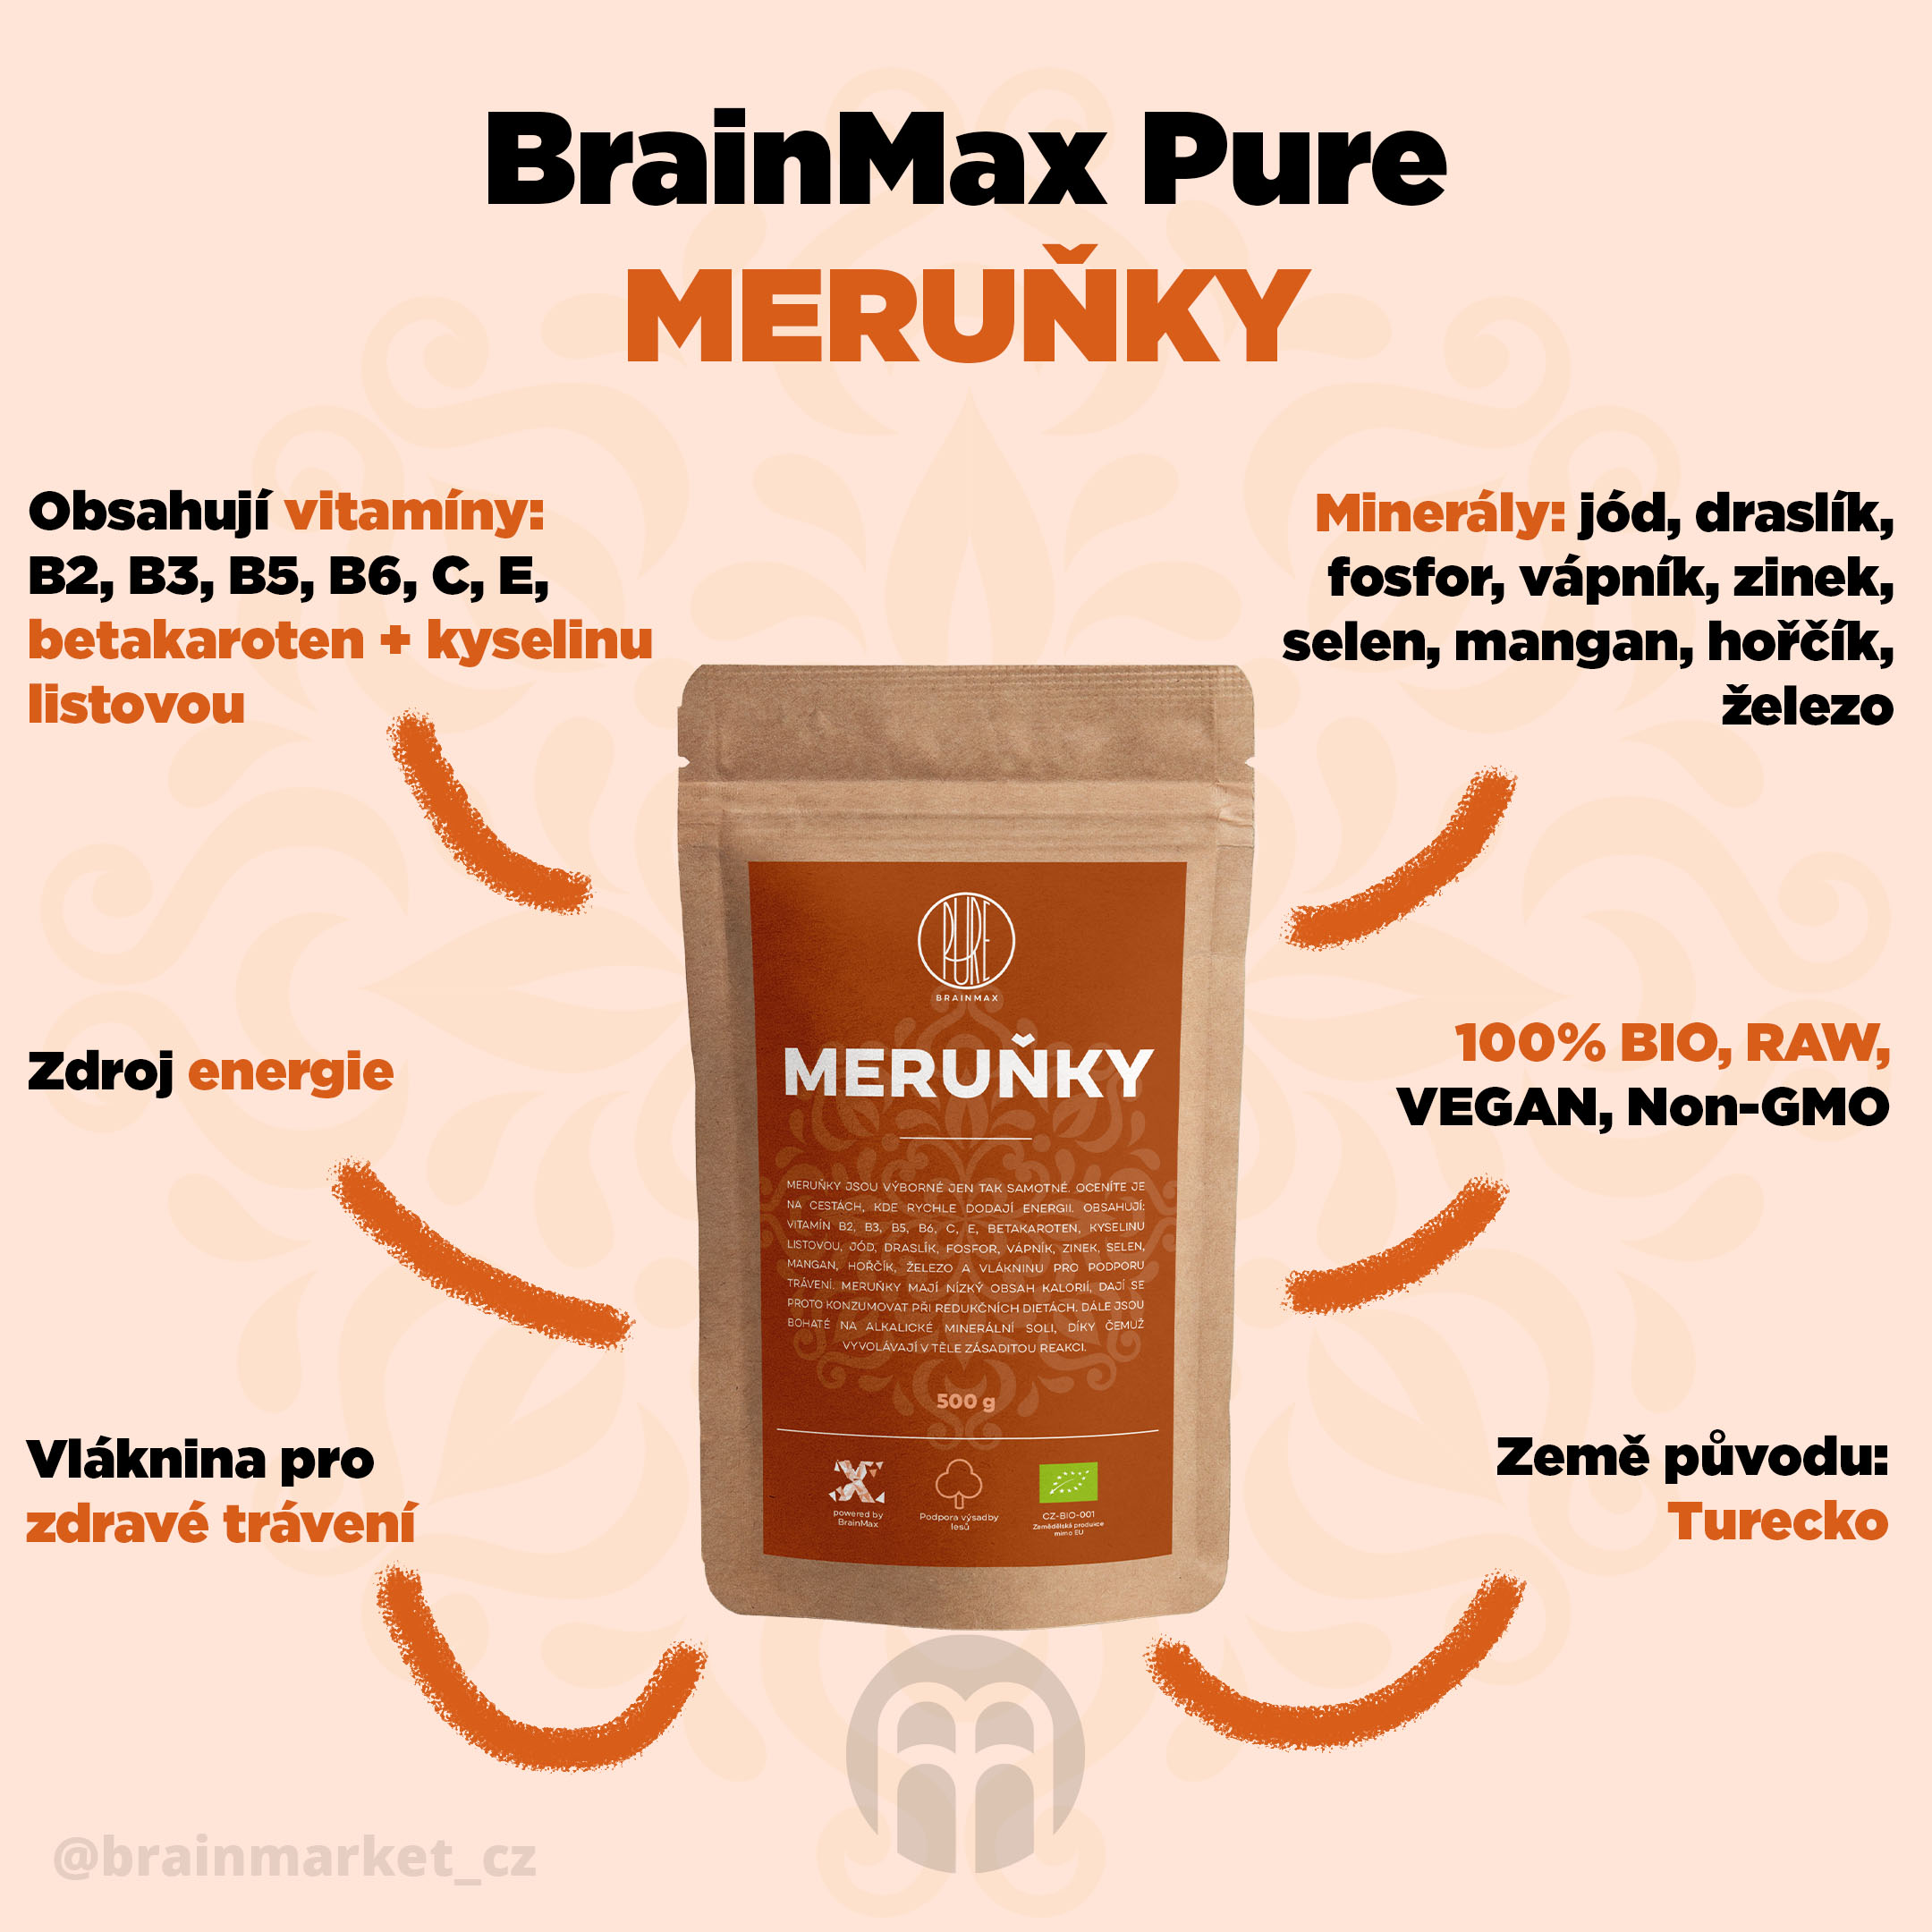 merunky-brainmax-pure-infografika-brainmarket-cz